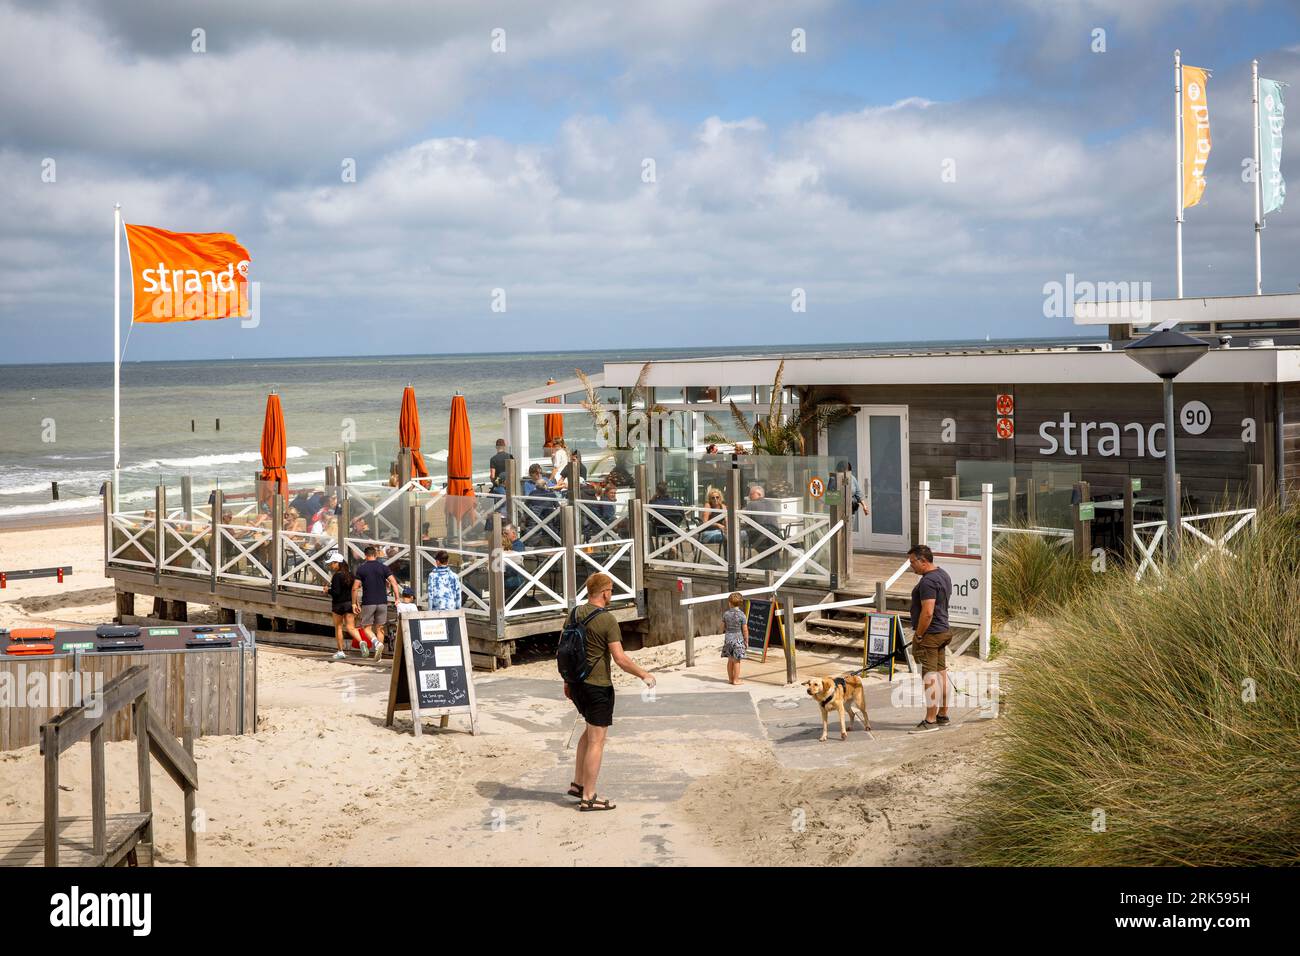 Ristorante pavillon Strand90 sulla spiaggia di Domburg sulla penisola Walcheren, Zeeland, Paesi Bassi. Ristorante Pavillon Strand90:00 Strand von Domb Foto Stock